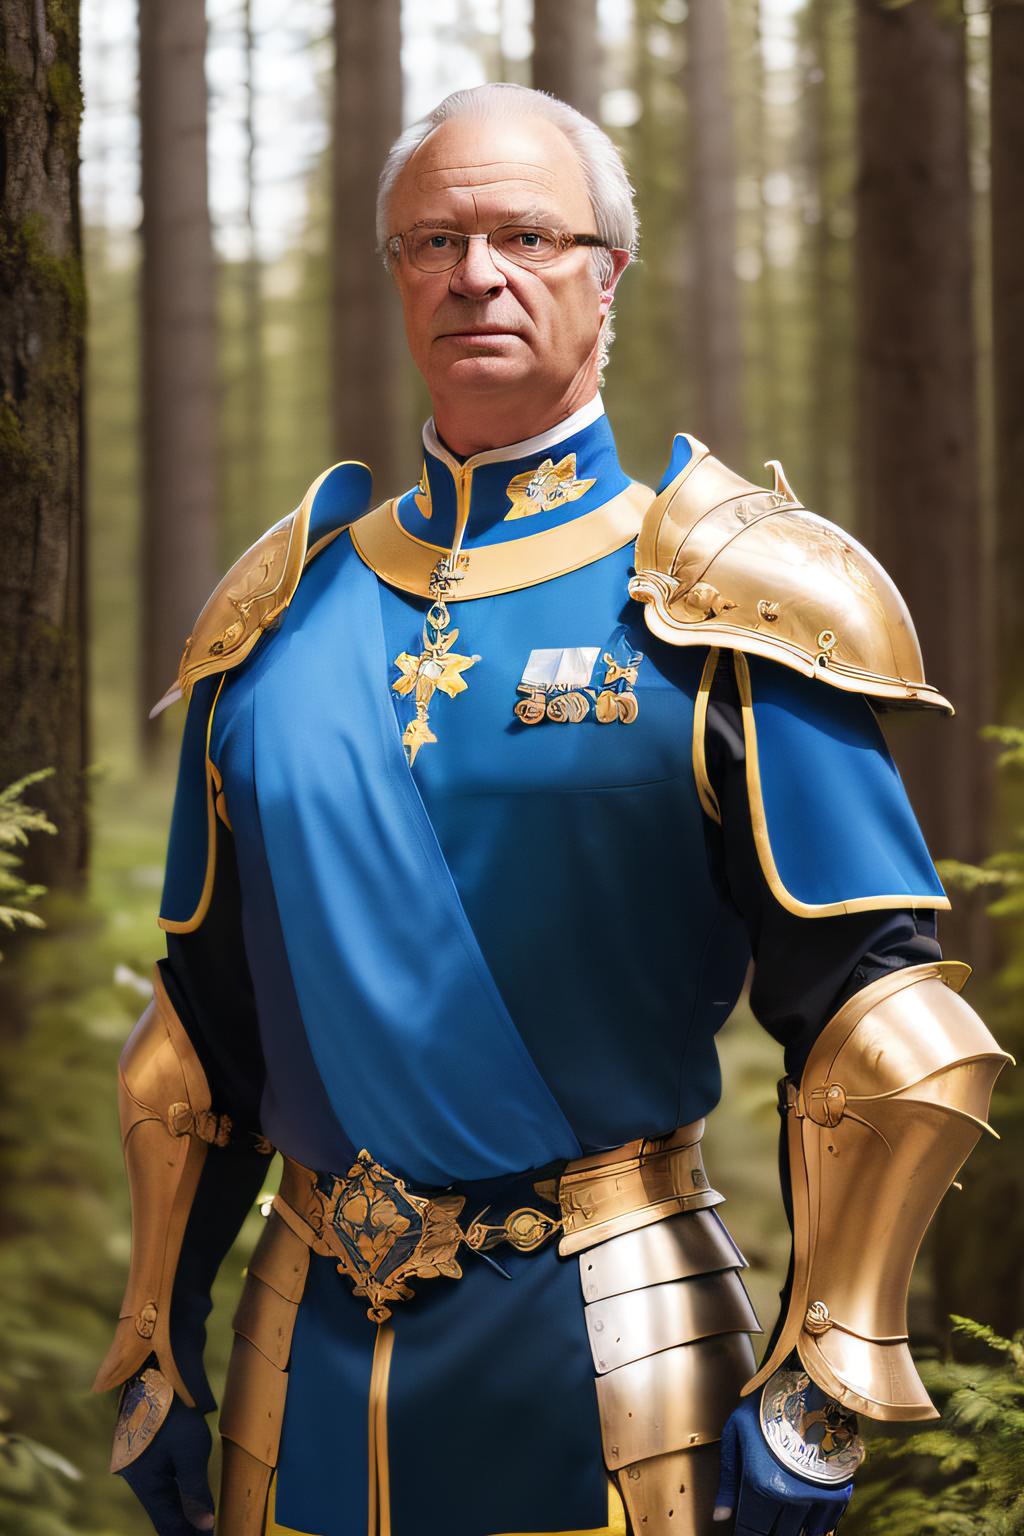 King Carl XVI Gustaf of Sweden image by VenaGe